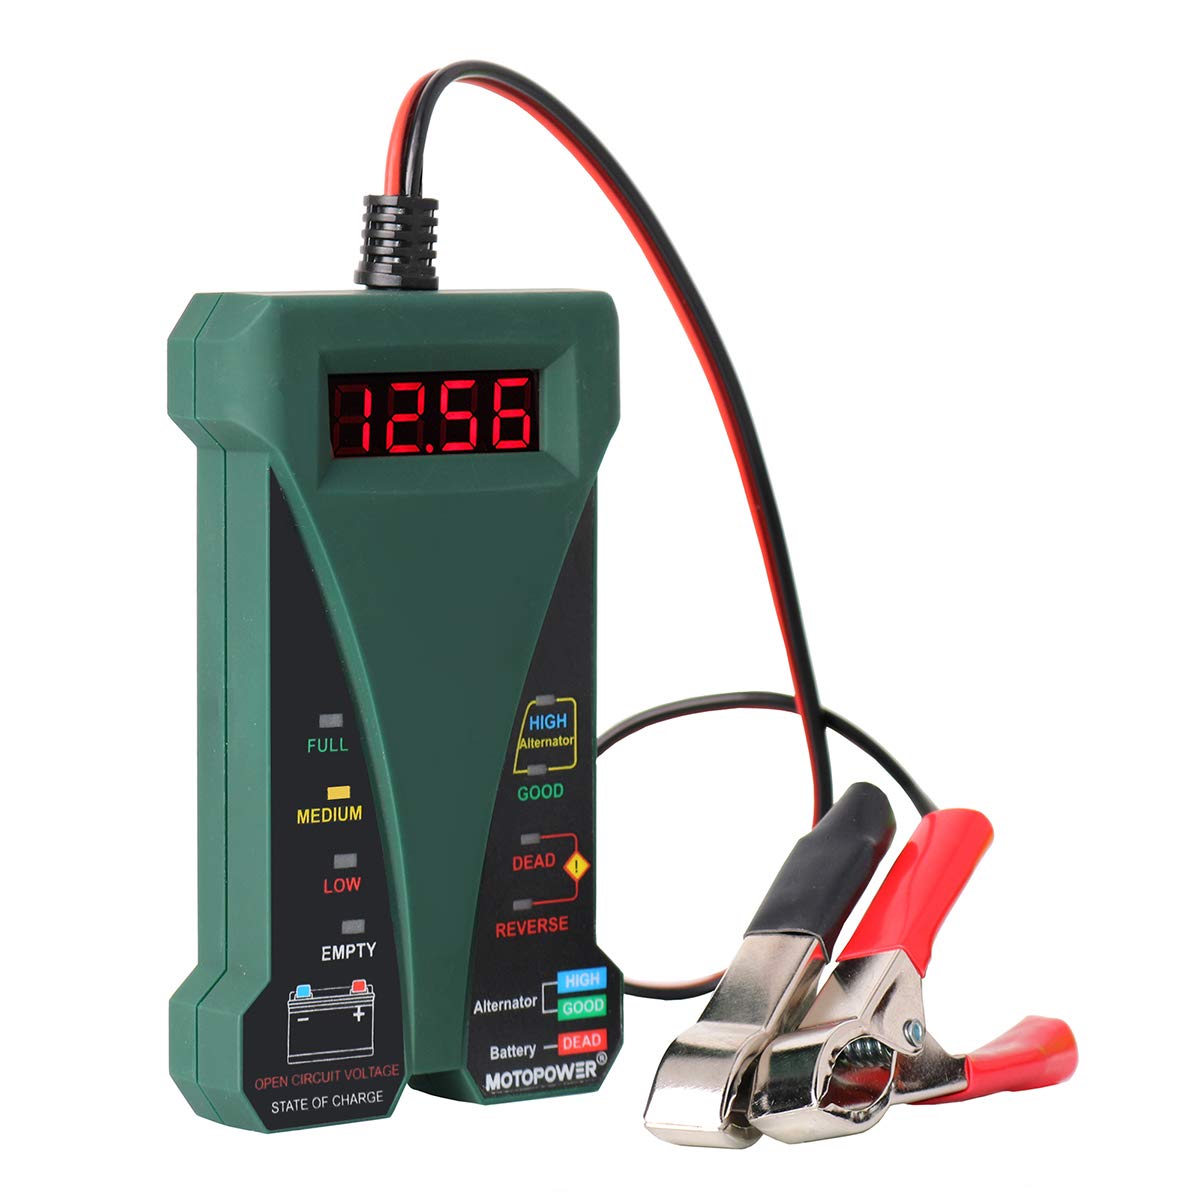 MOTOPOWER 12V Digitale Batterietester Voltmeter Ladesystem-Analysator mit LCD-Display und LED-Anzeige - Grün von MOTOPOWER